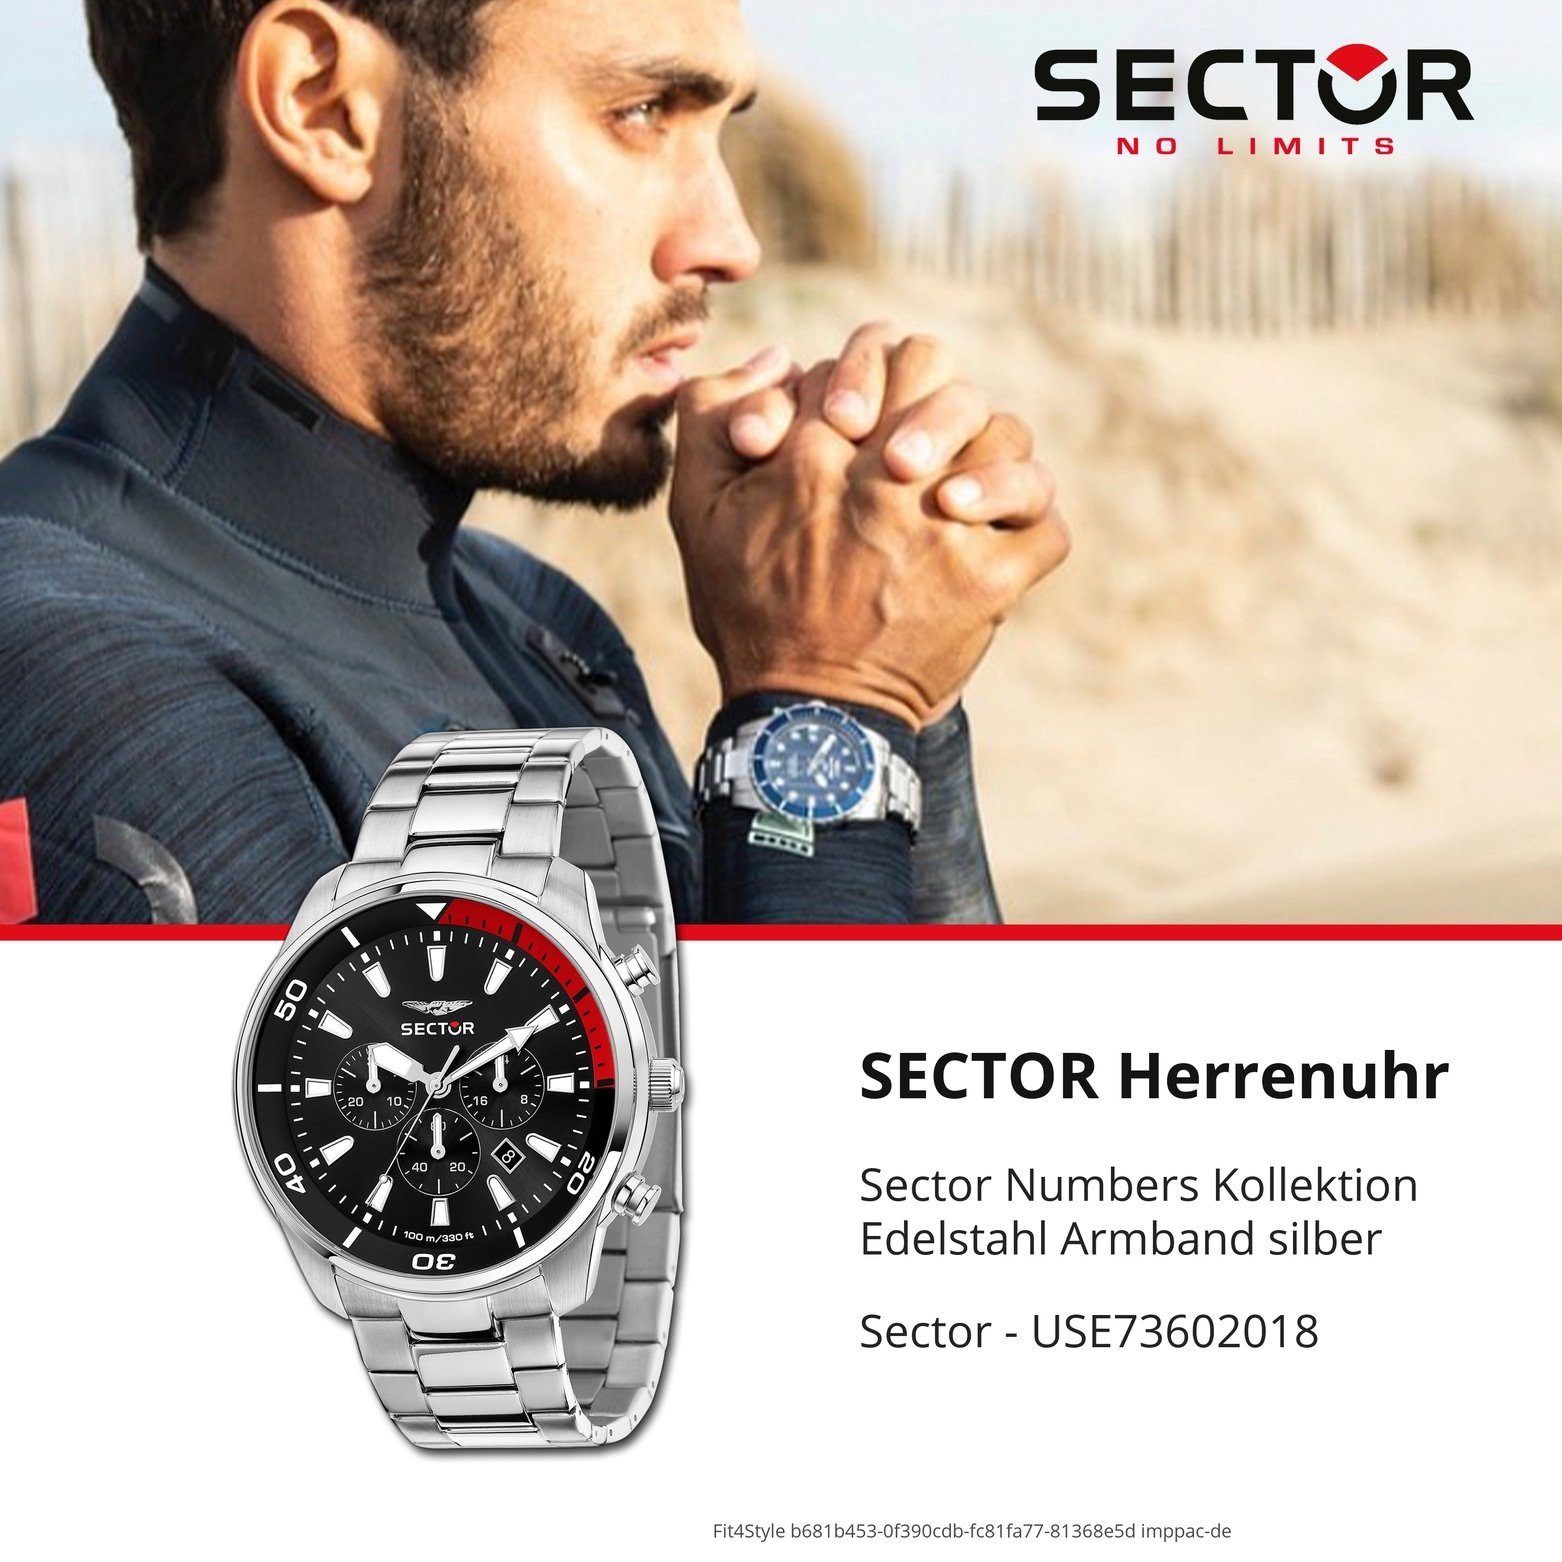 Sector Chronograph Sector Herren Edelstahlarmband groß Elegant (48mm), Herren silber, Armbanduhr Armbanduhr rund, Chrono